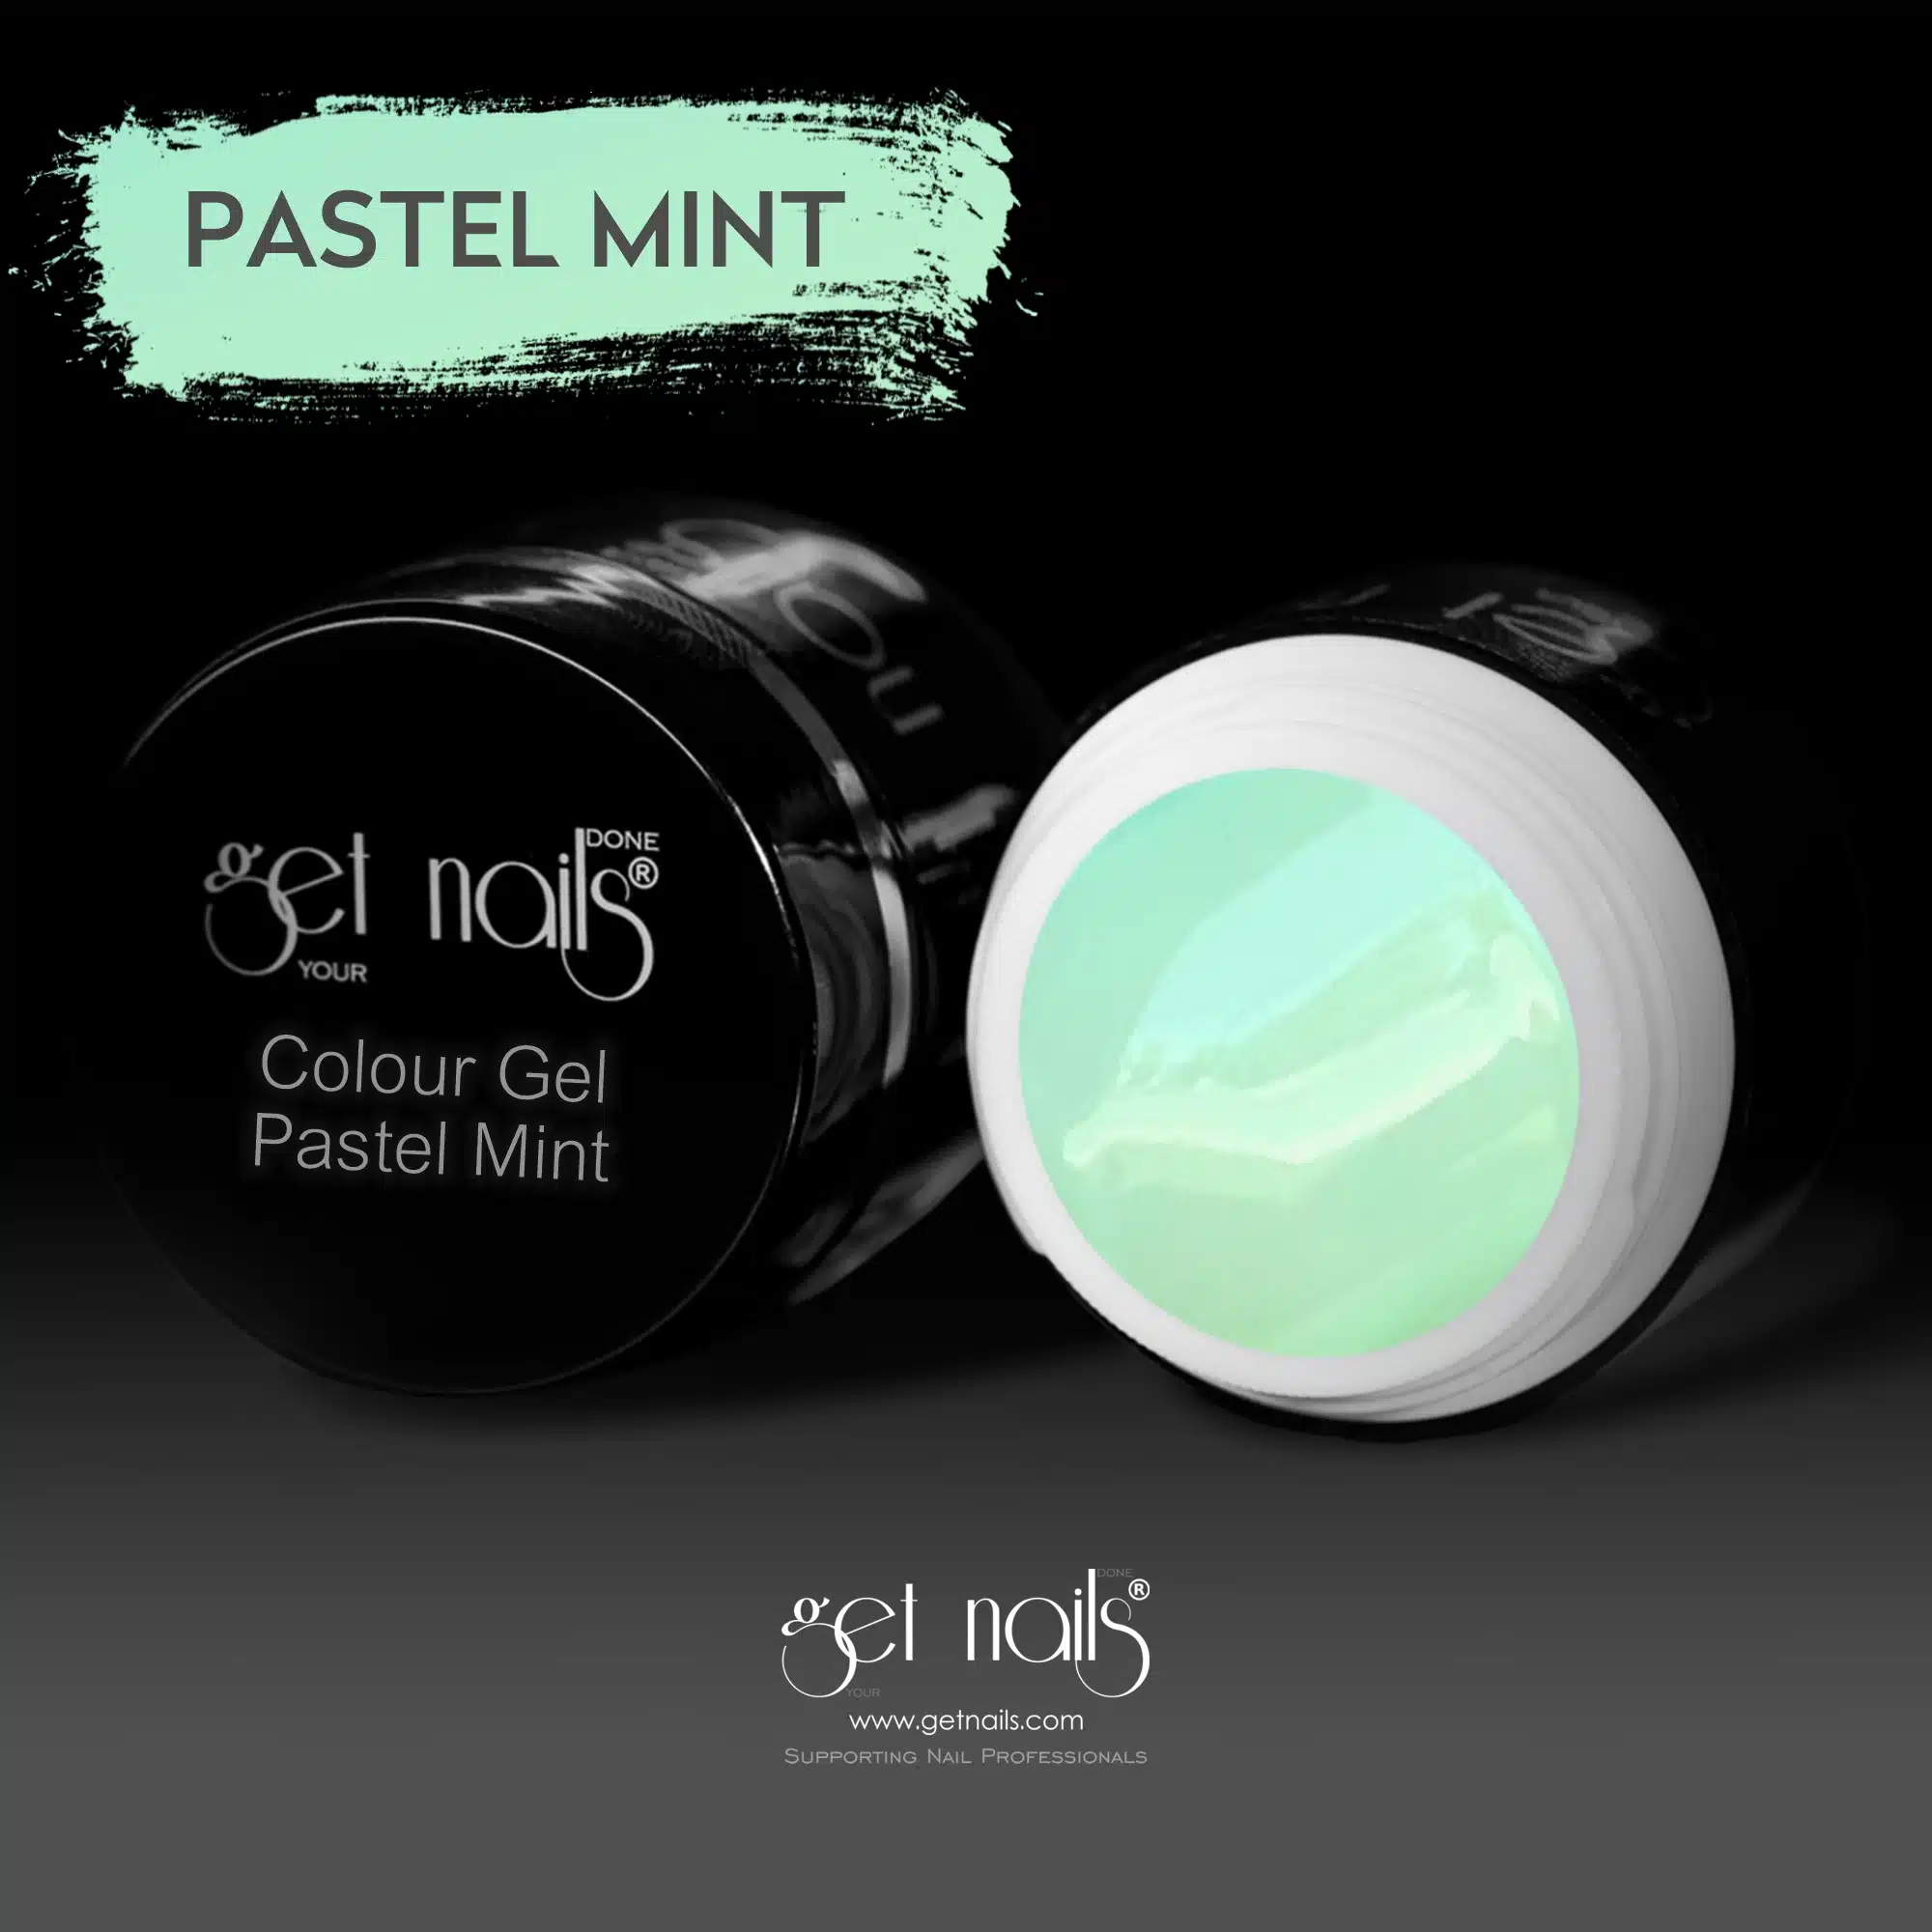 Get Nails Austria - Color Gel Pastel Mint 5g